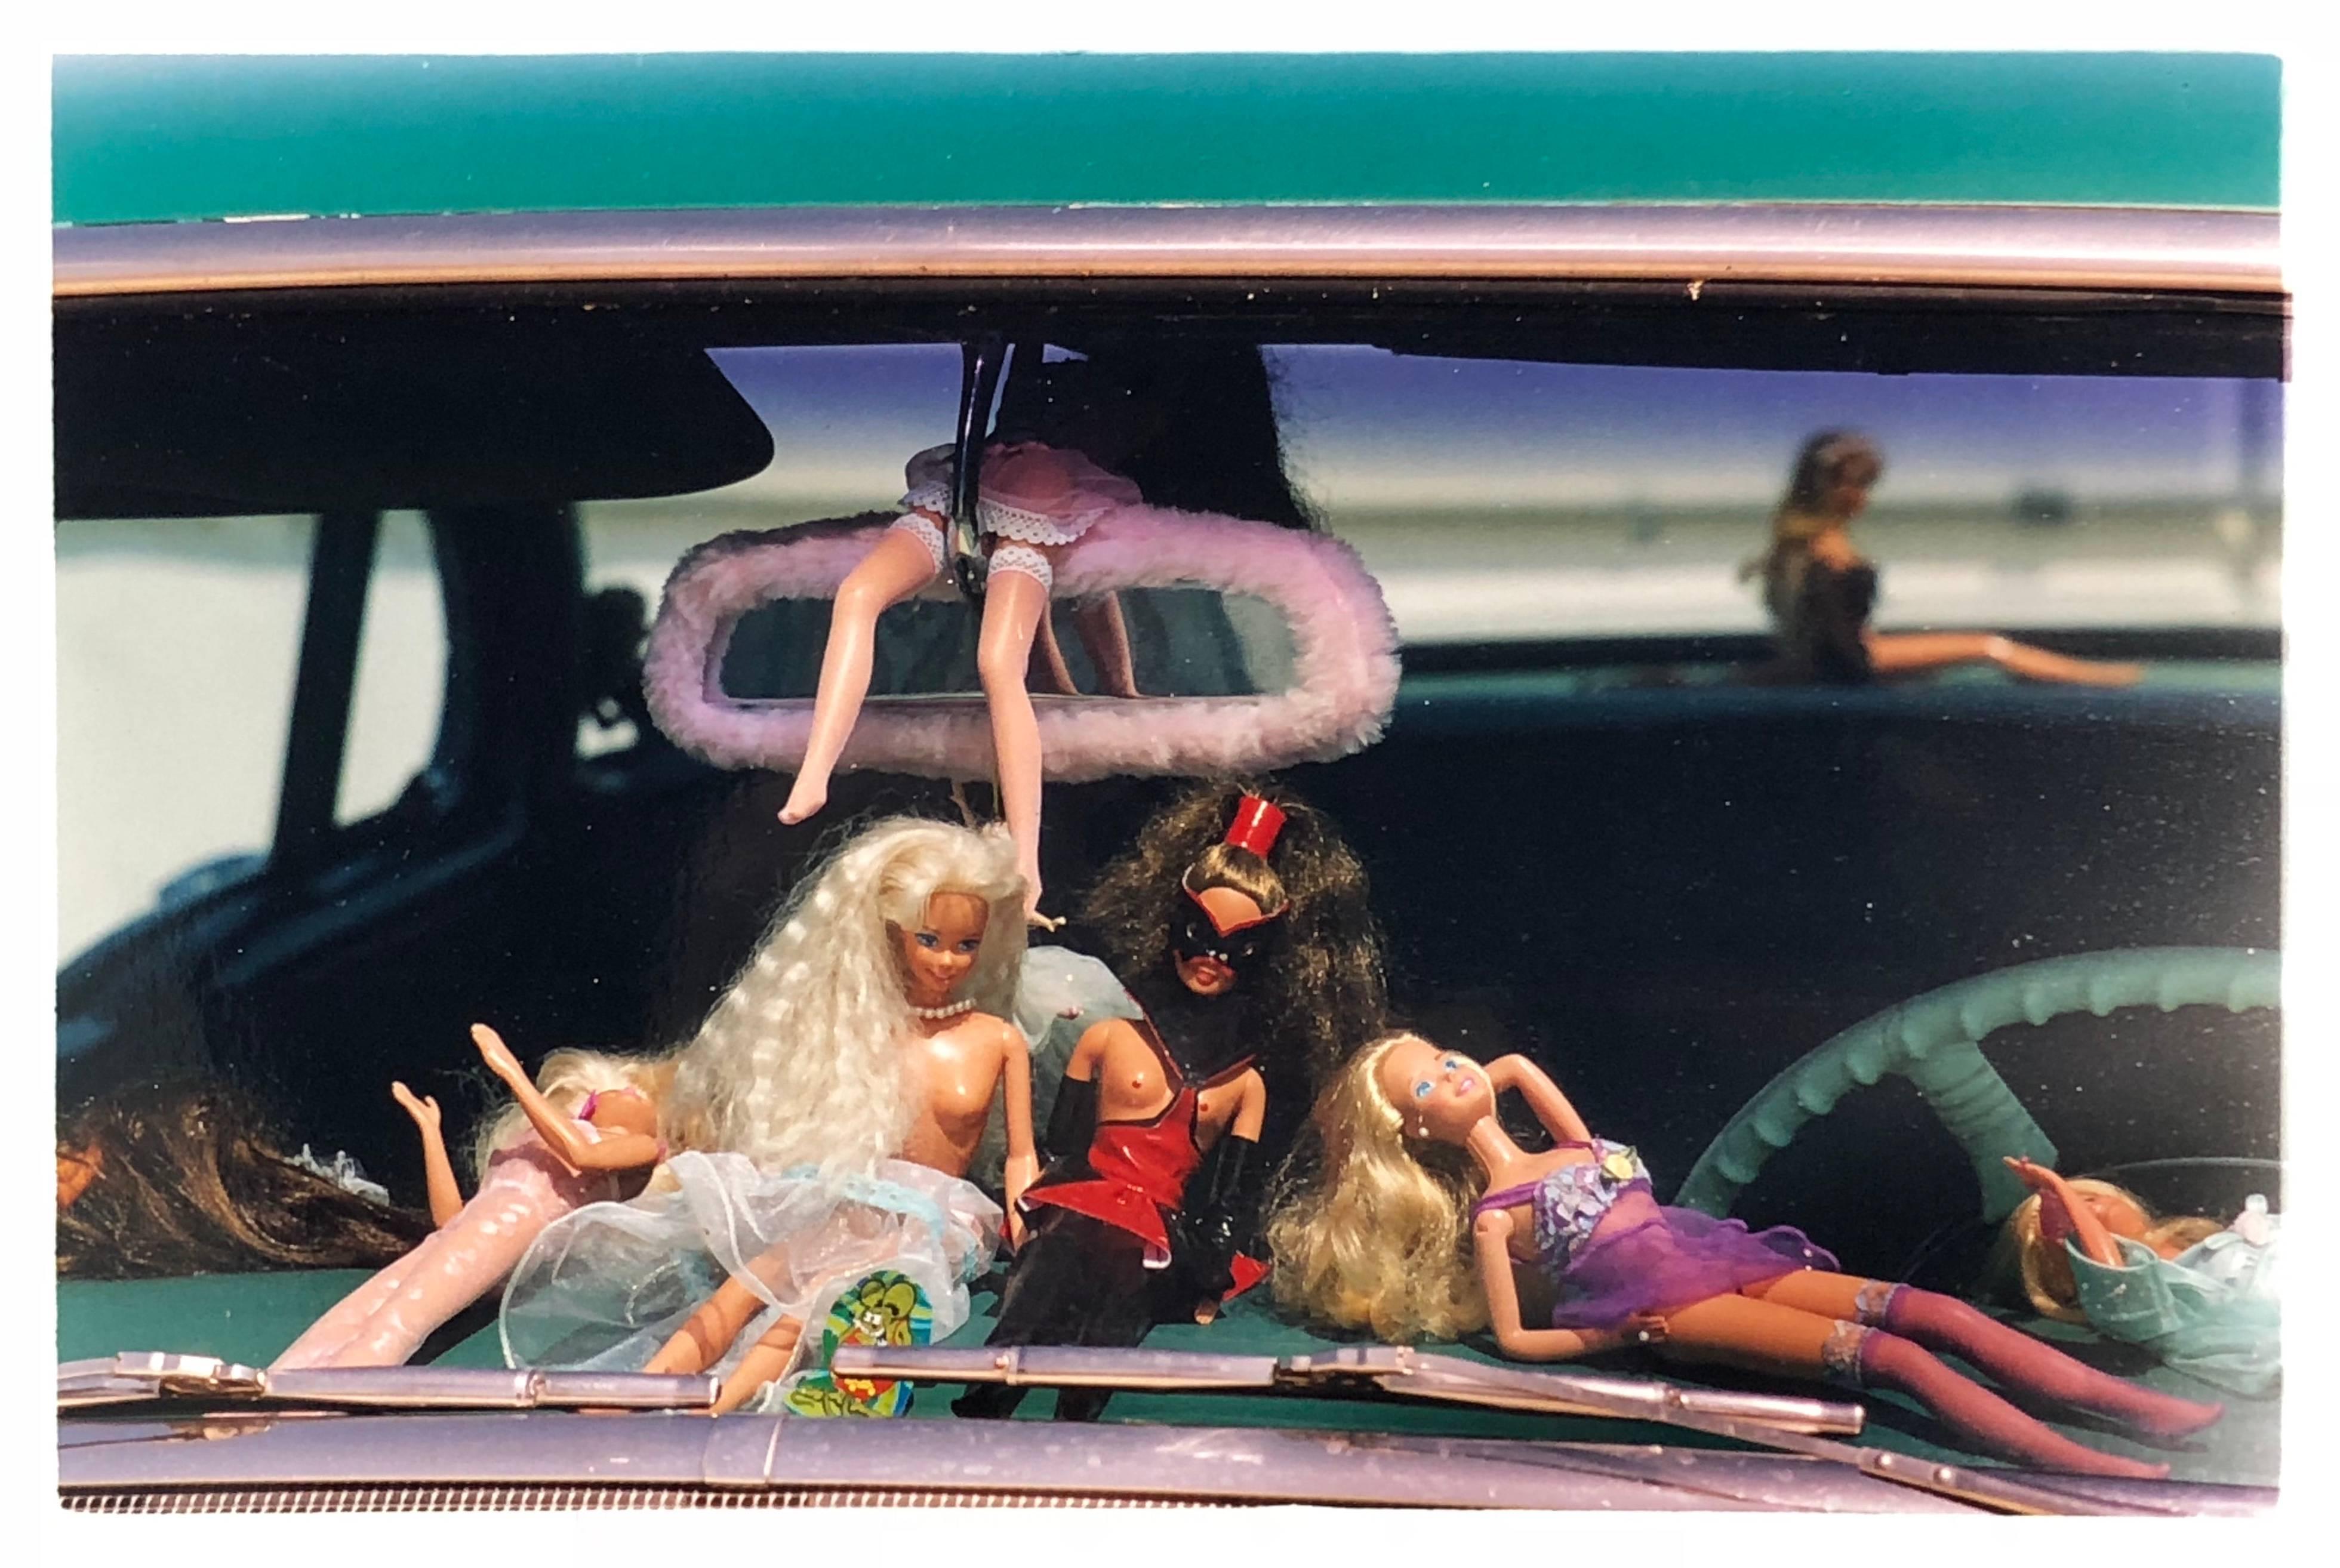 Oldsmobile & Sinful Barbie's, Las Vegas - Photographie couleur contemporaine